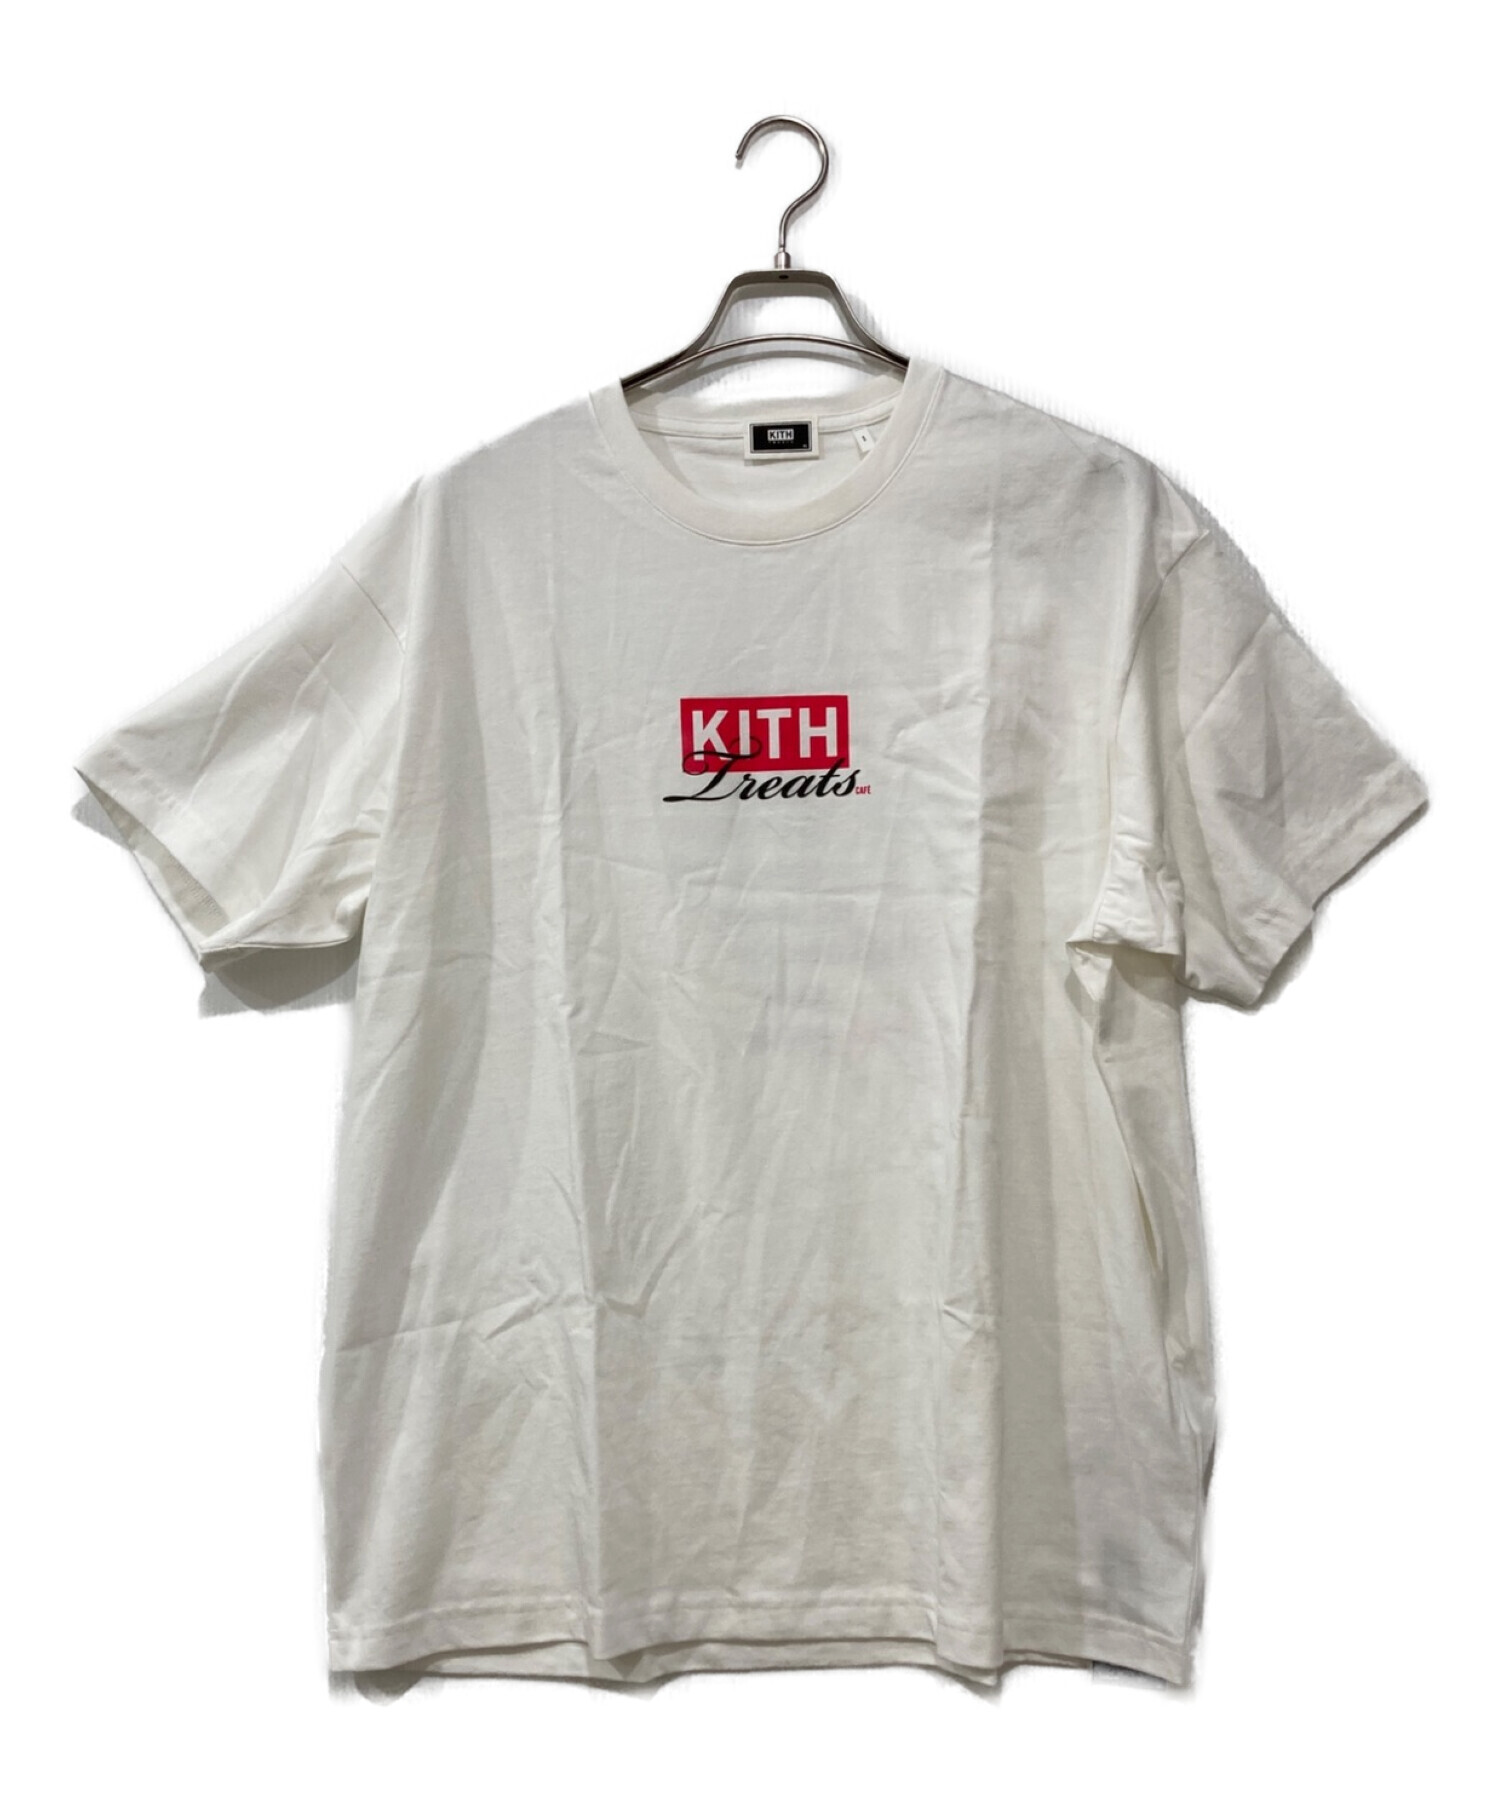 中古・古着通販】KITH (キス) Kith Treats Toronto Cafe Tee サイズ:XL ...